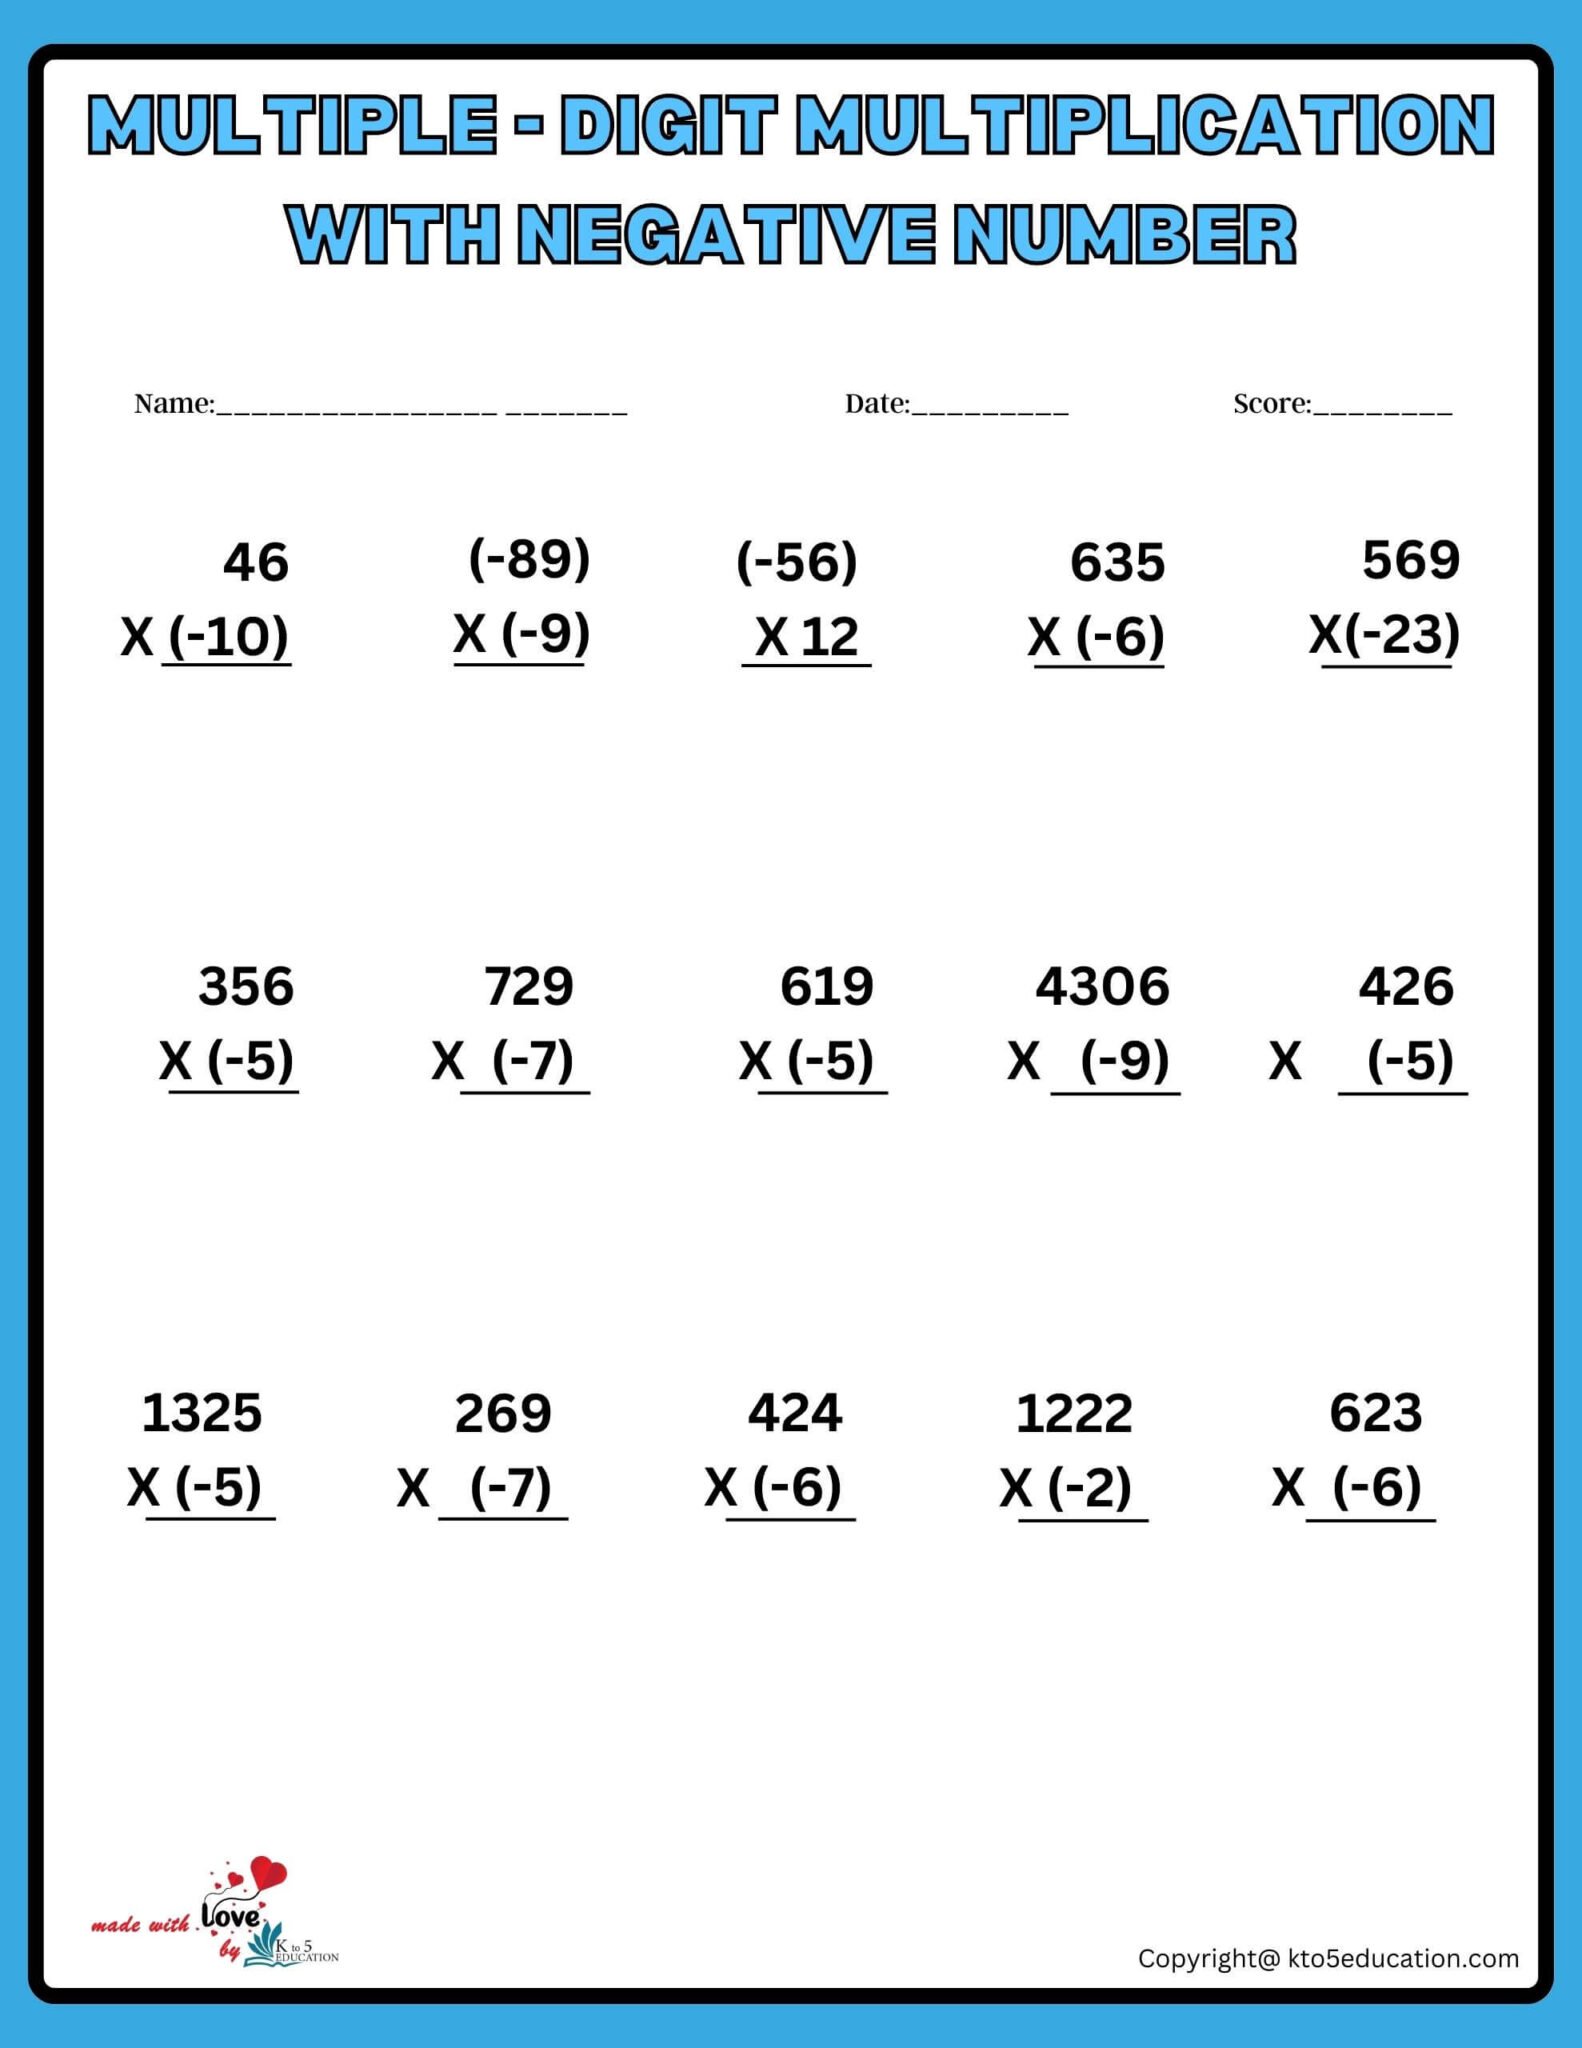 multiplication-of-negative-numbers-worksheet-free